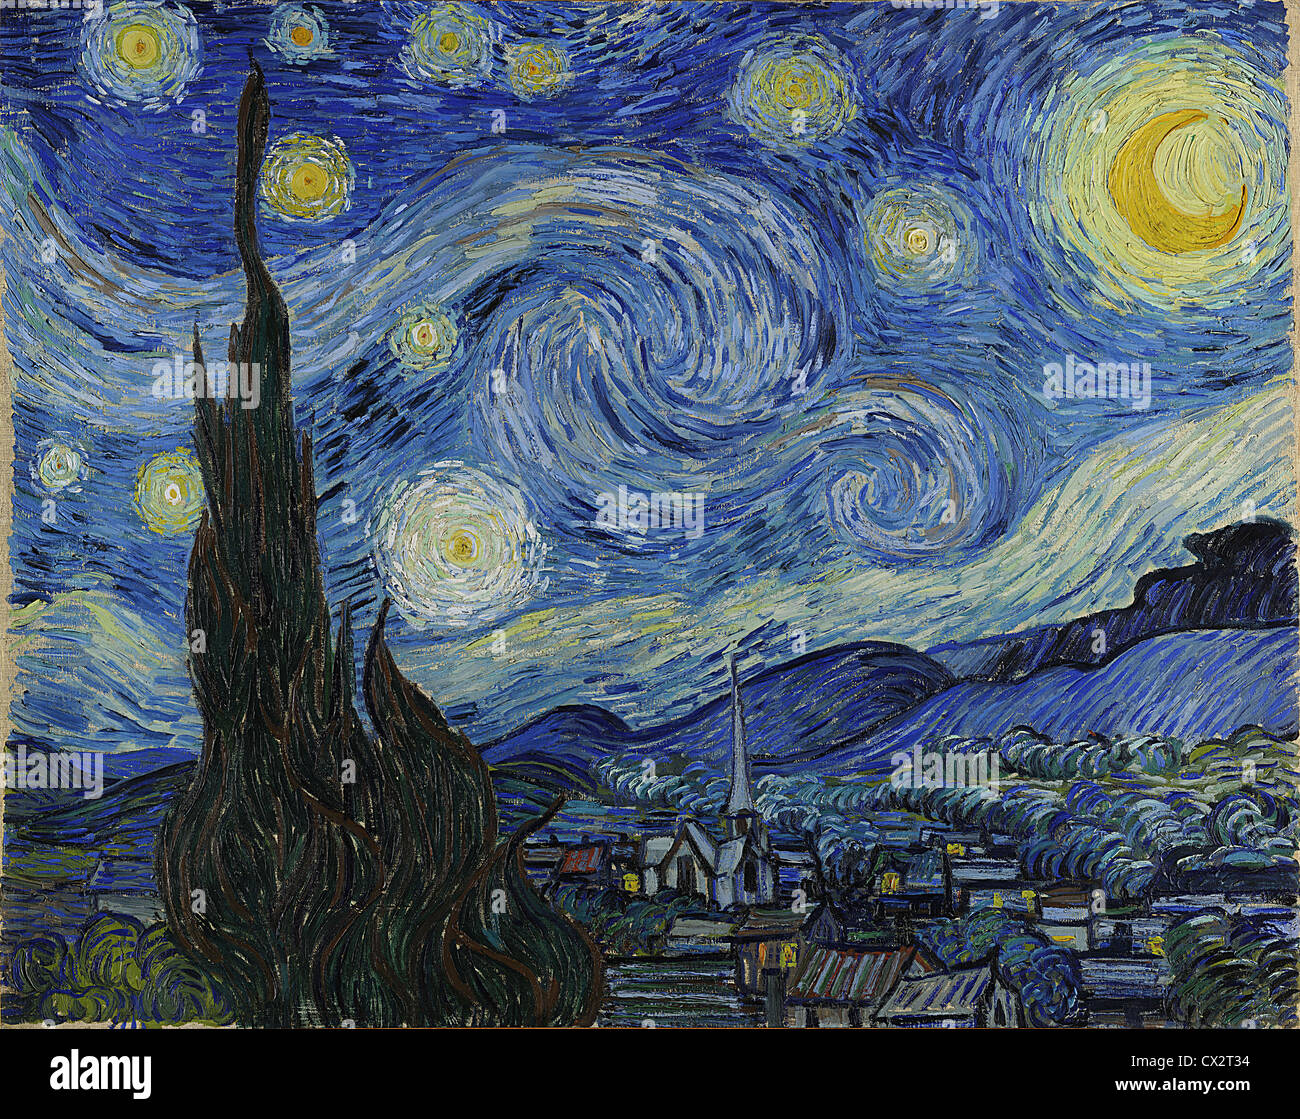 Die Sternennacht von Vincent Van Gogh - sehr hohe Bildqualität dieses Meisterwerk Gemäldes. Stockfoto